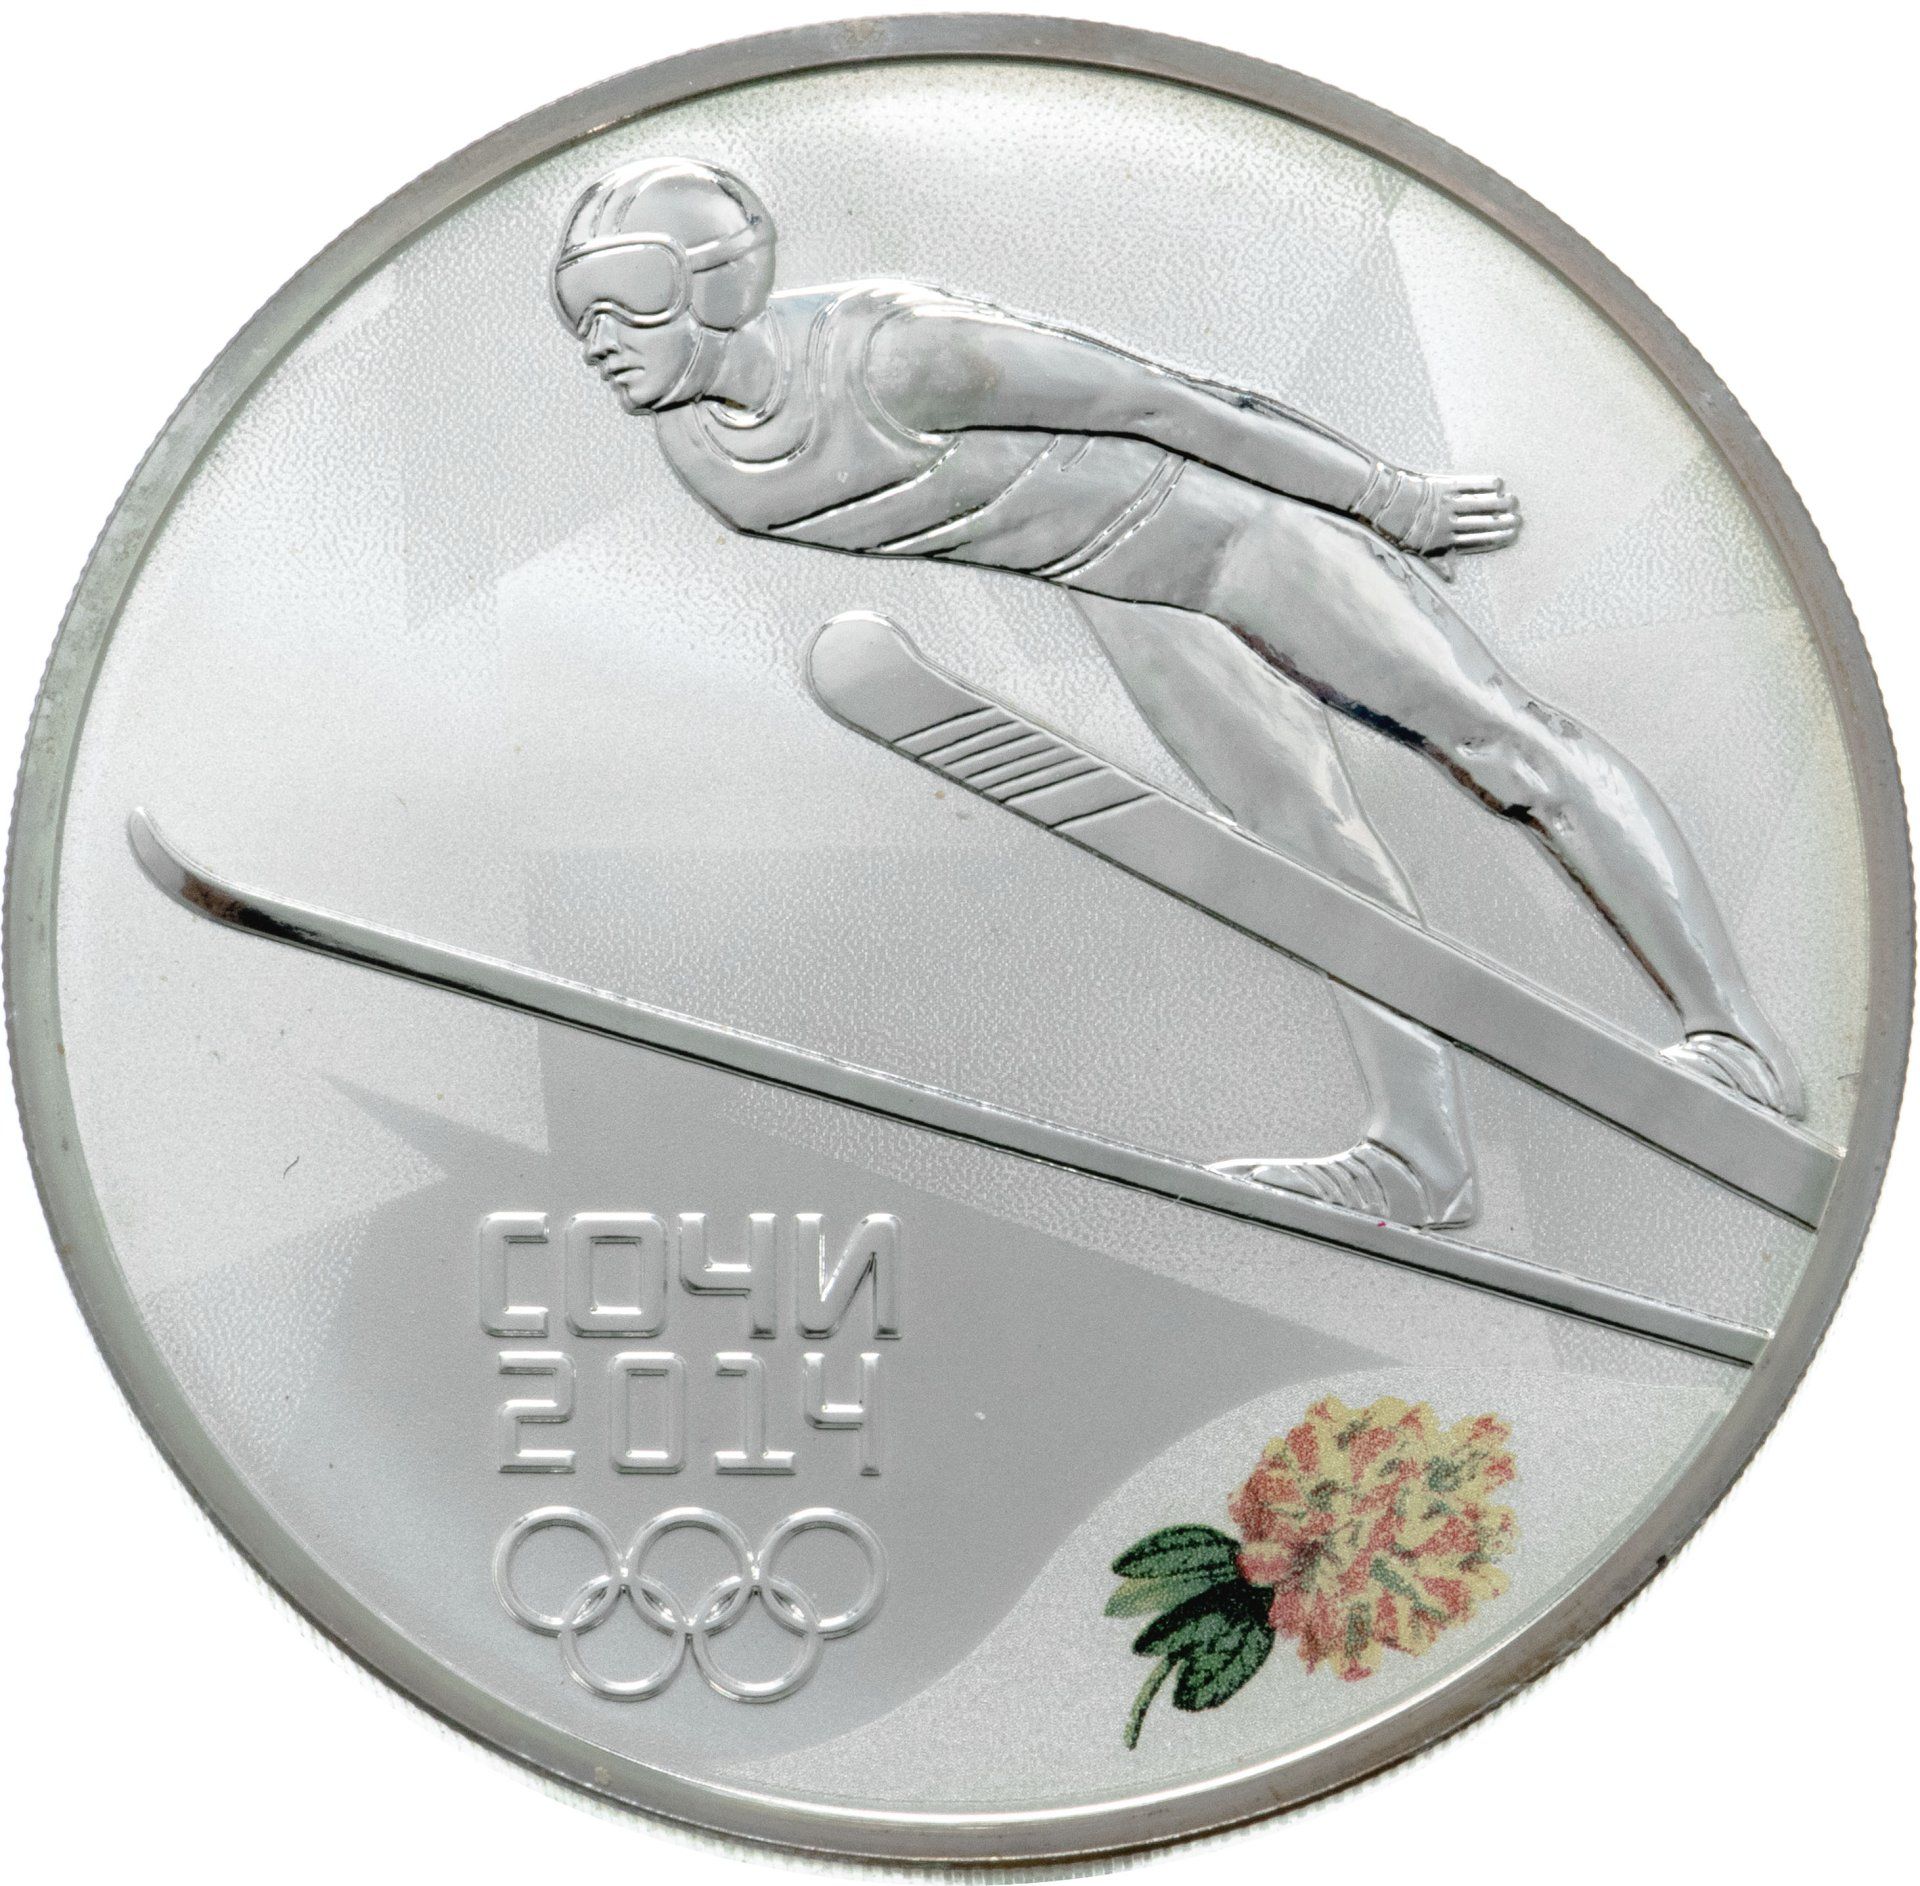 Золотые монеты олимпиады Сочи. Сувенир в виде трамплина. Монеты олимпийских игр 2014